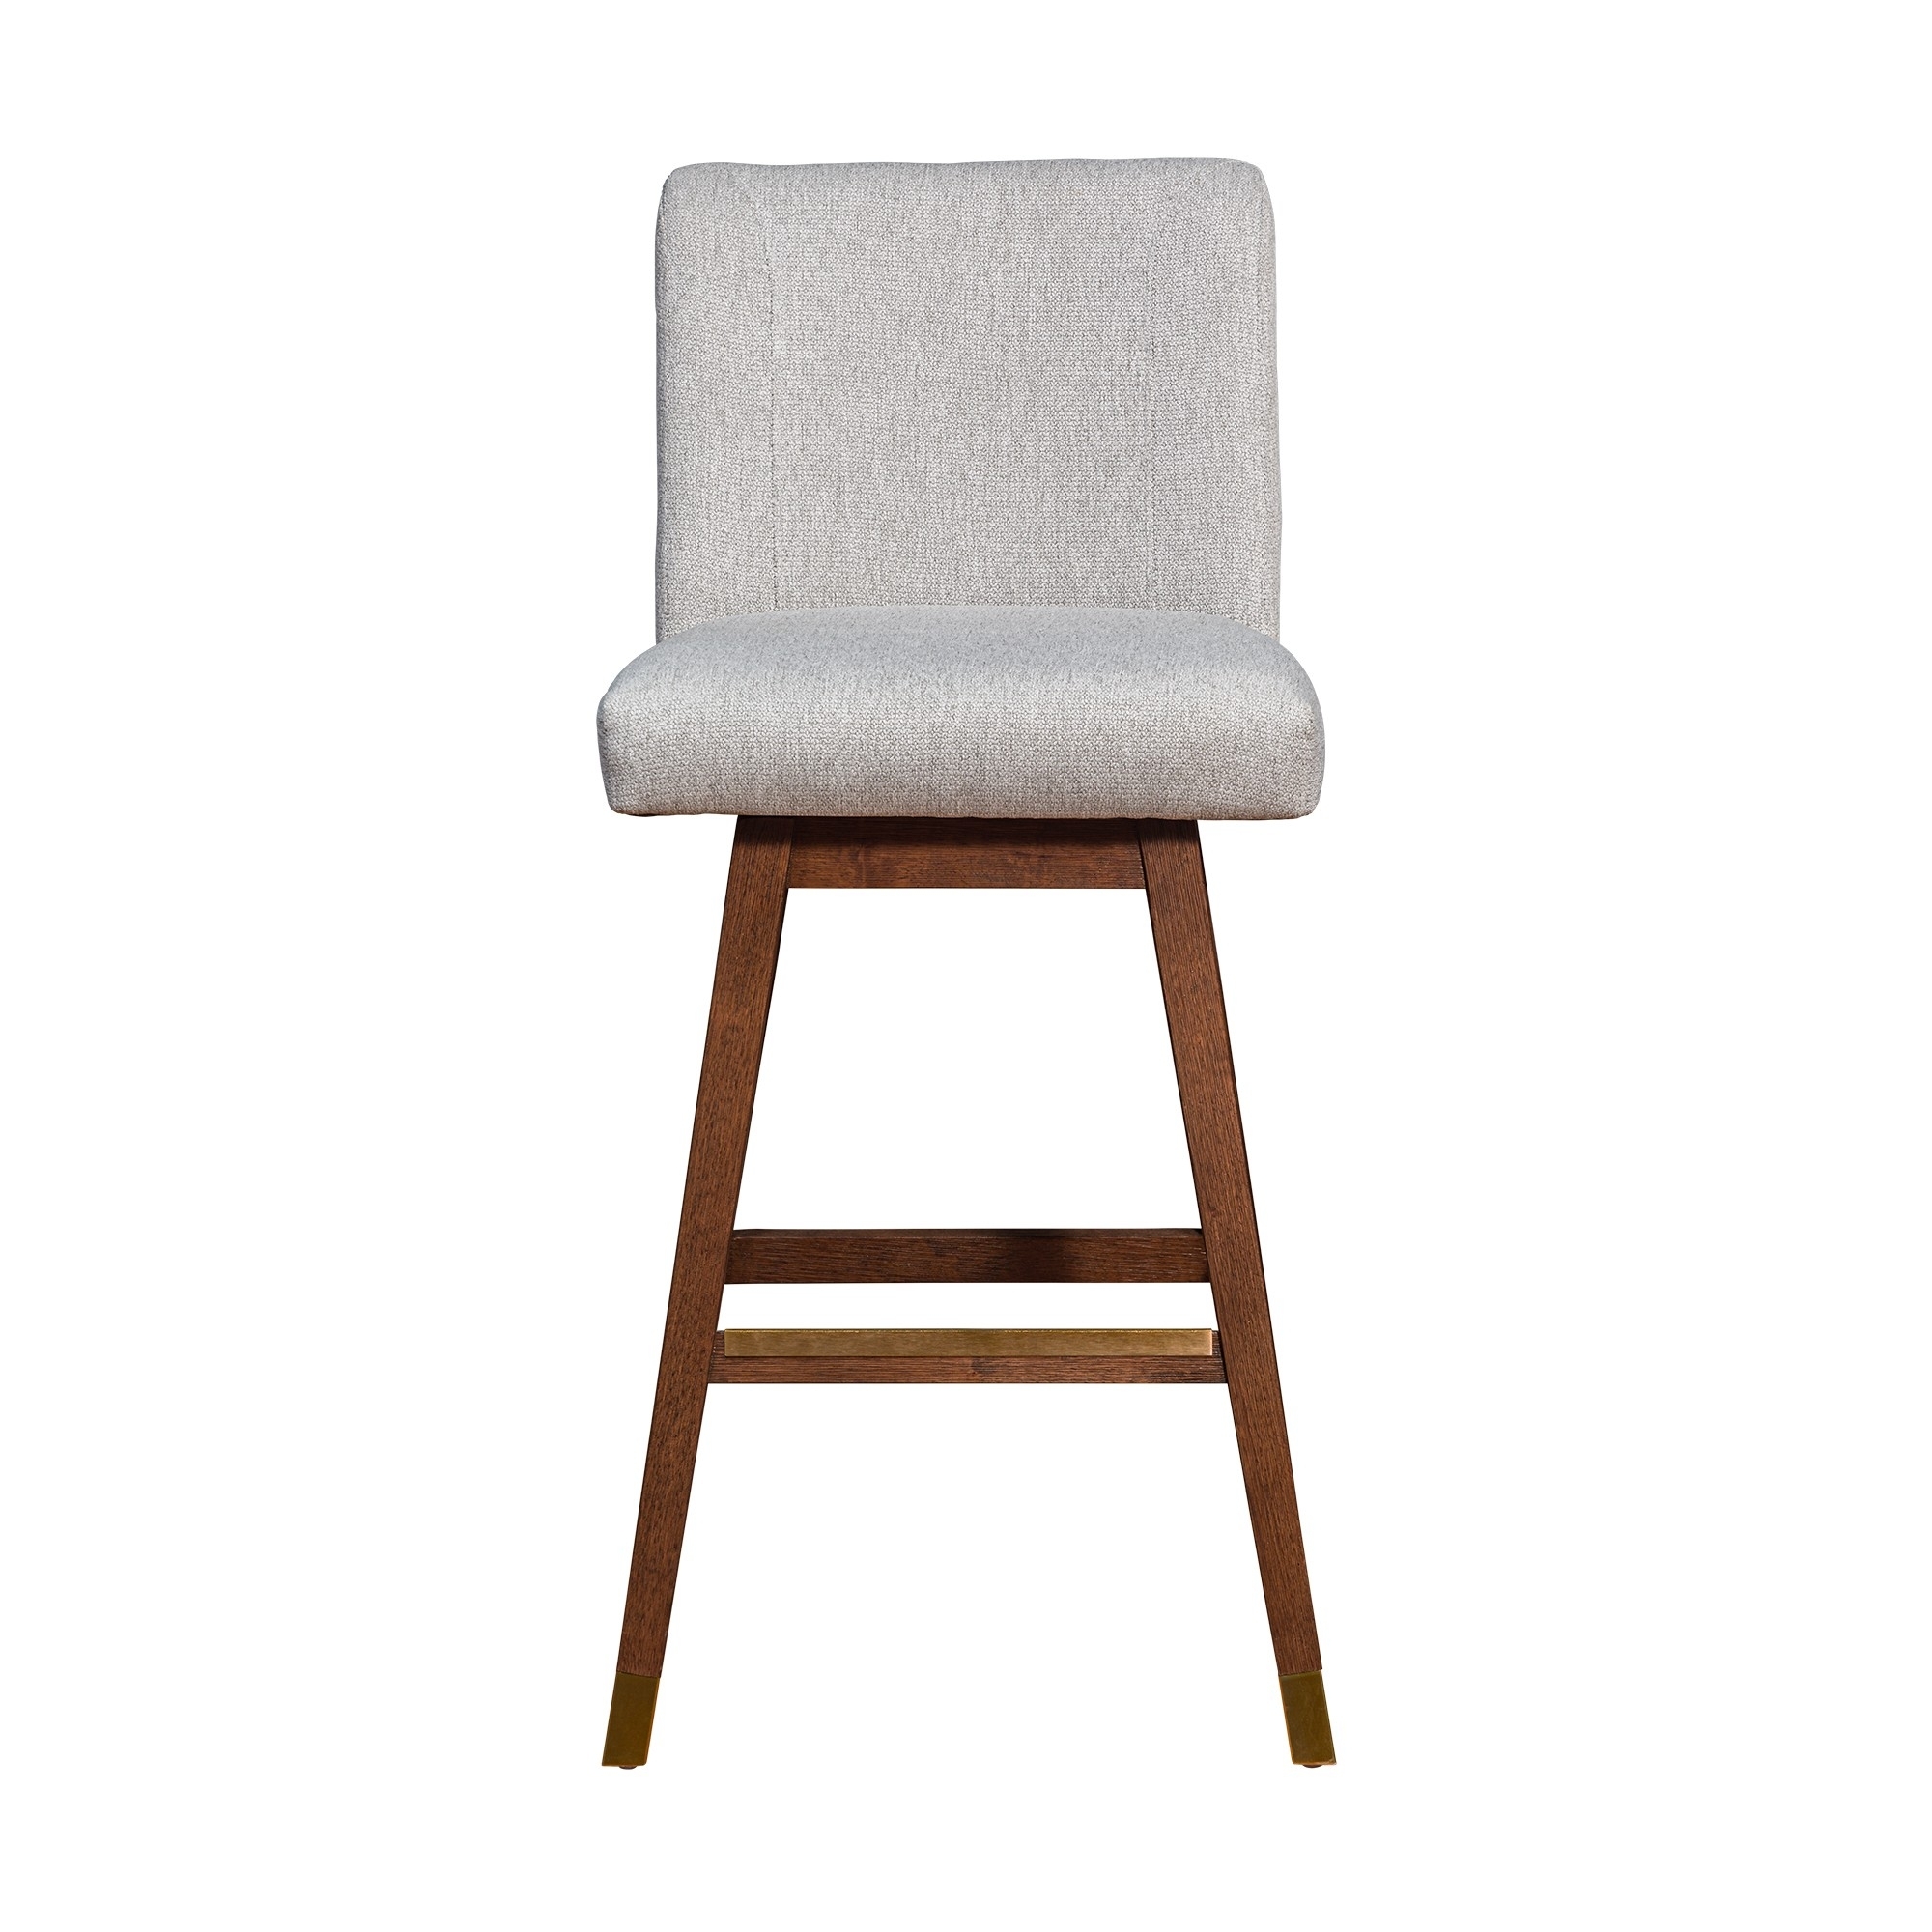 Lia 30 Swivel Barstool Chair, Brown Rubberwood Frame, Light Gray Polyester- Saltoro Sherpi